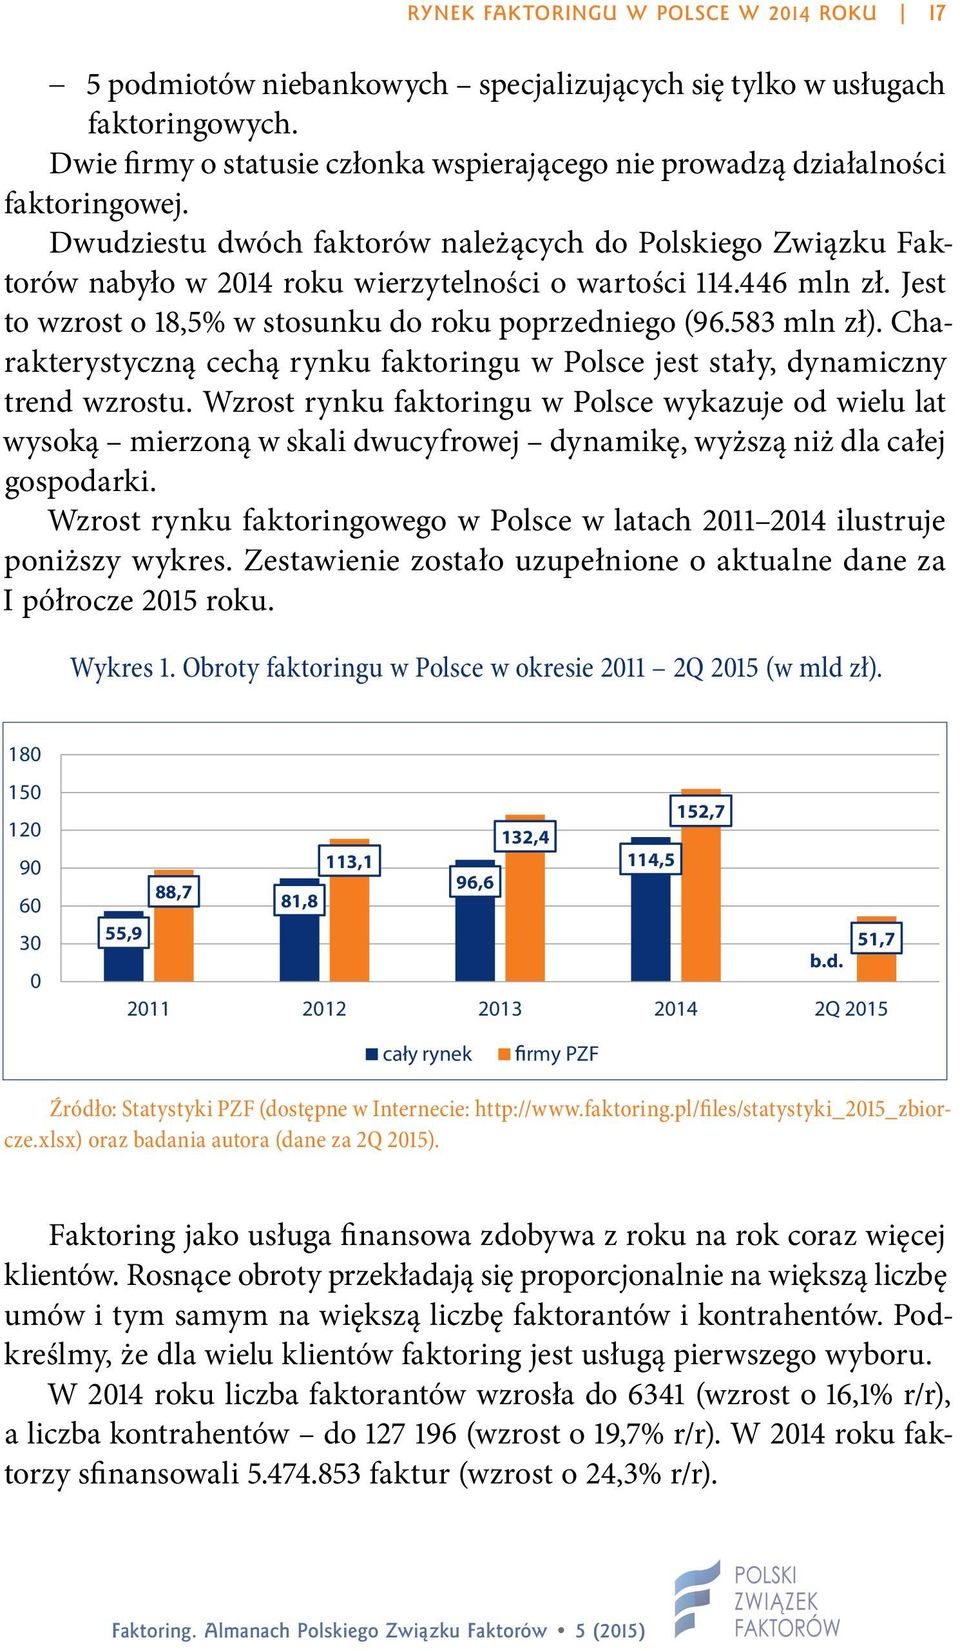 Dwudziestu dwóch faktorów należących do Polskiego Związku Faktorów nabyło w 2014 roku wierzytelności o wartości 114.446 mln zł. Jest to wzrost o 18,5% w stosunku do roku poprzedniego (96.583 mln zł).